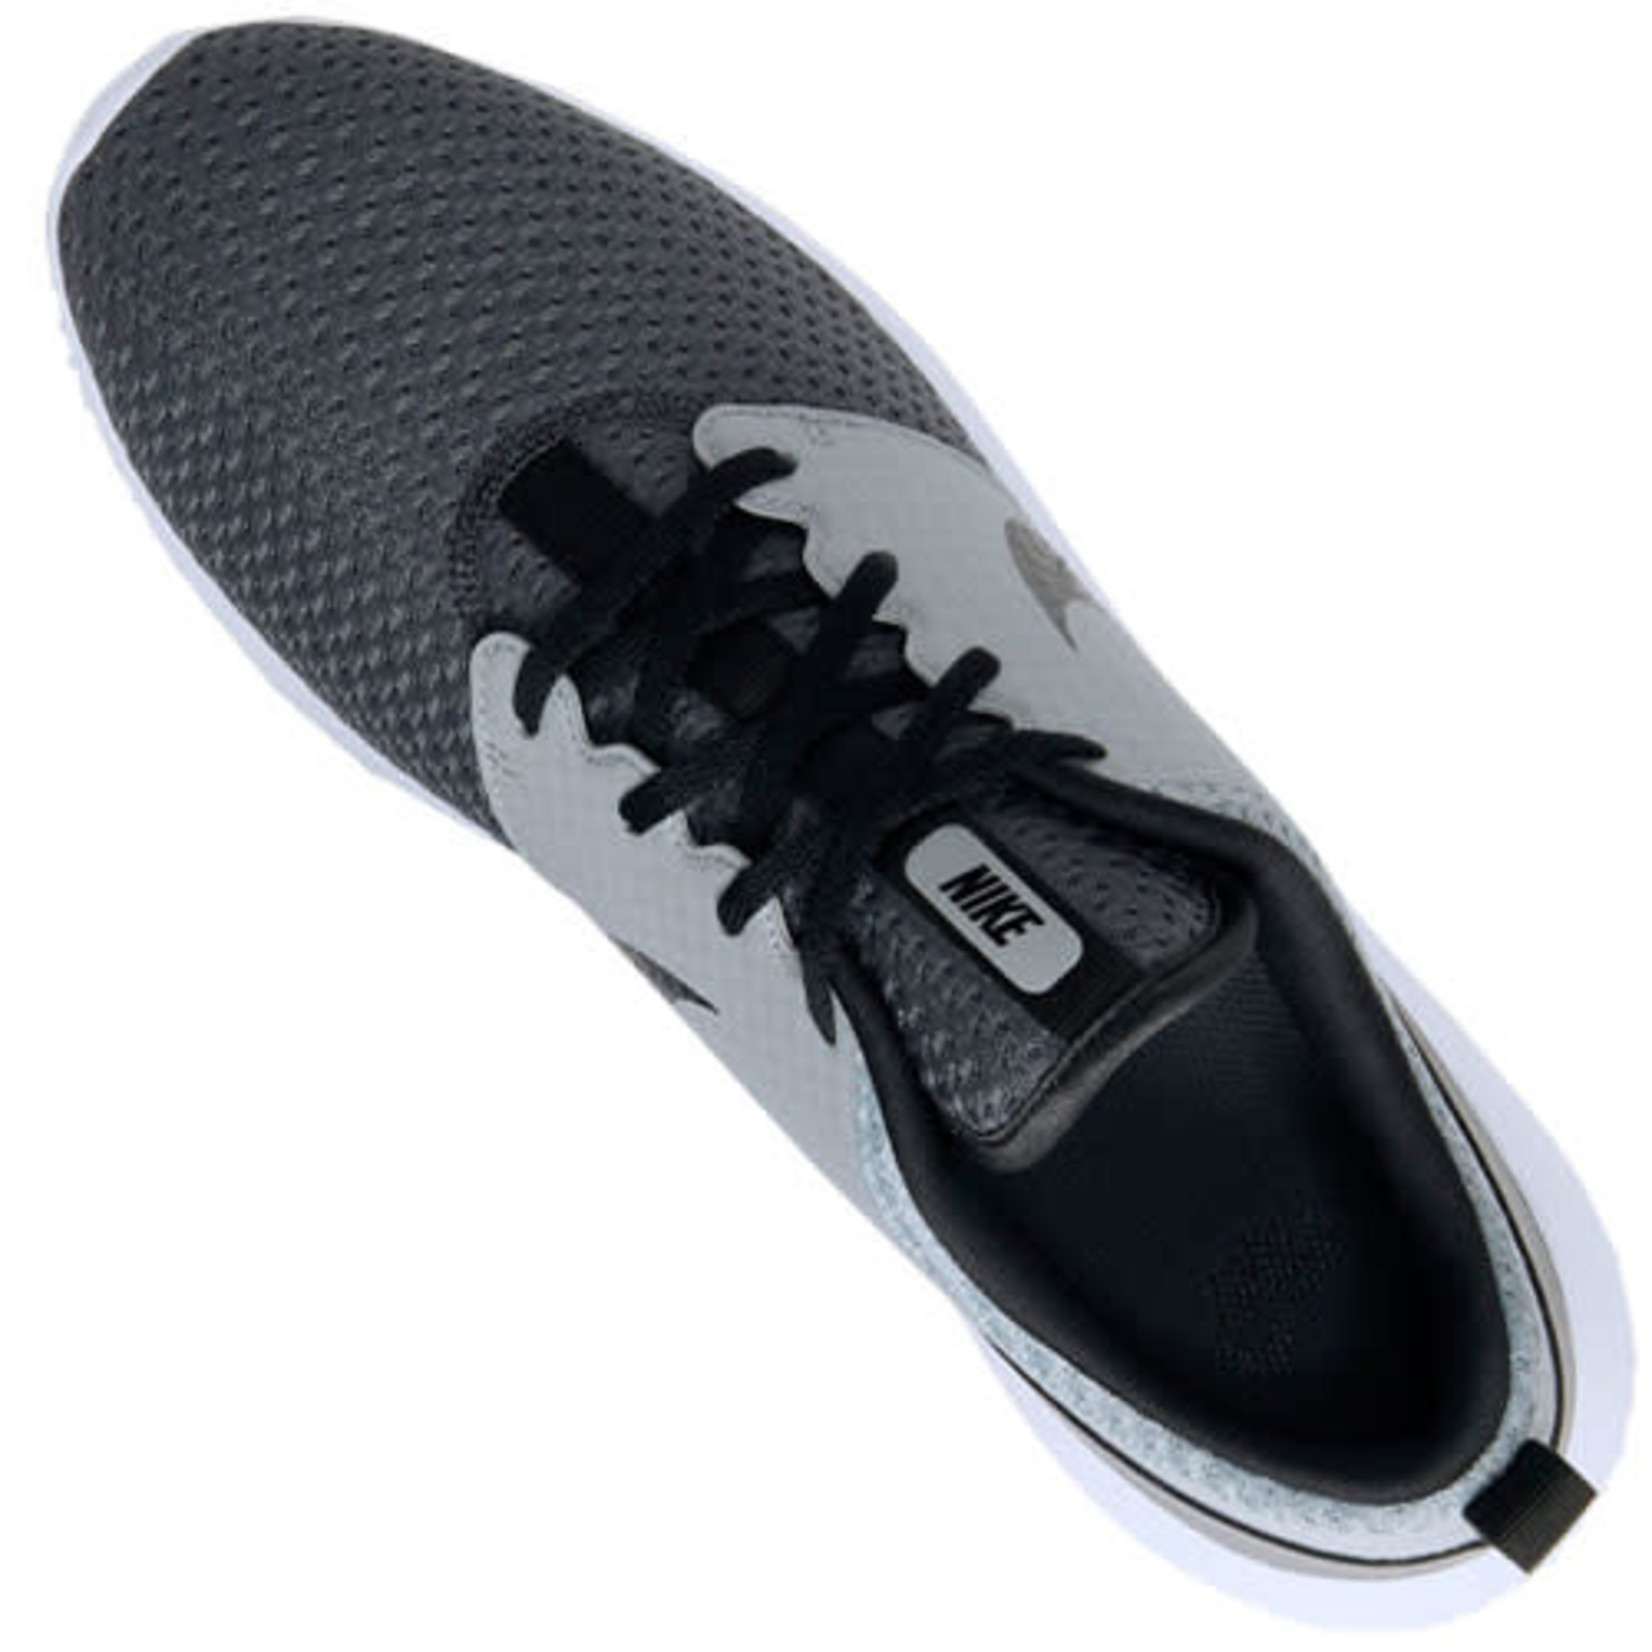 Nike Men's Nike Roshe G Spikeless Golf Shoe Grey